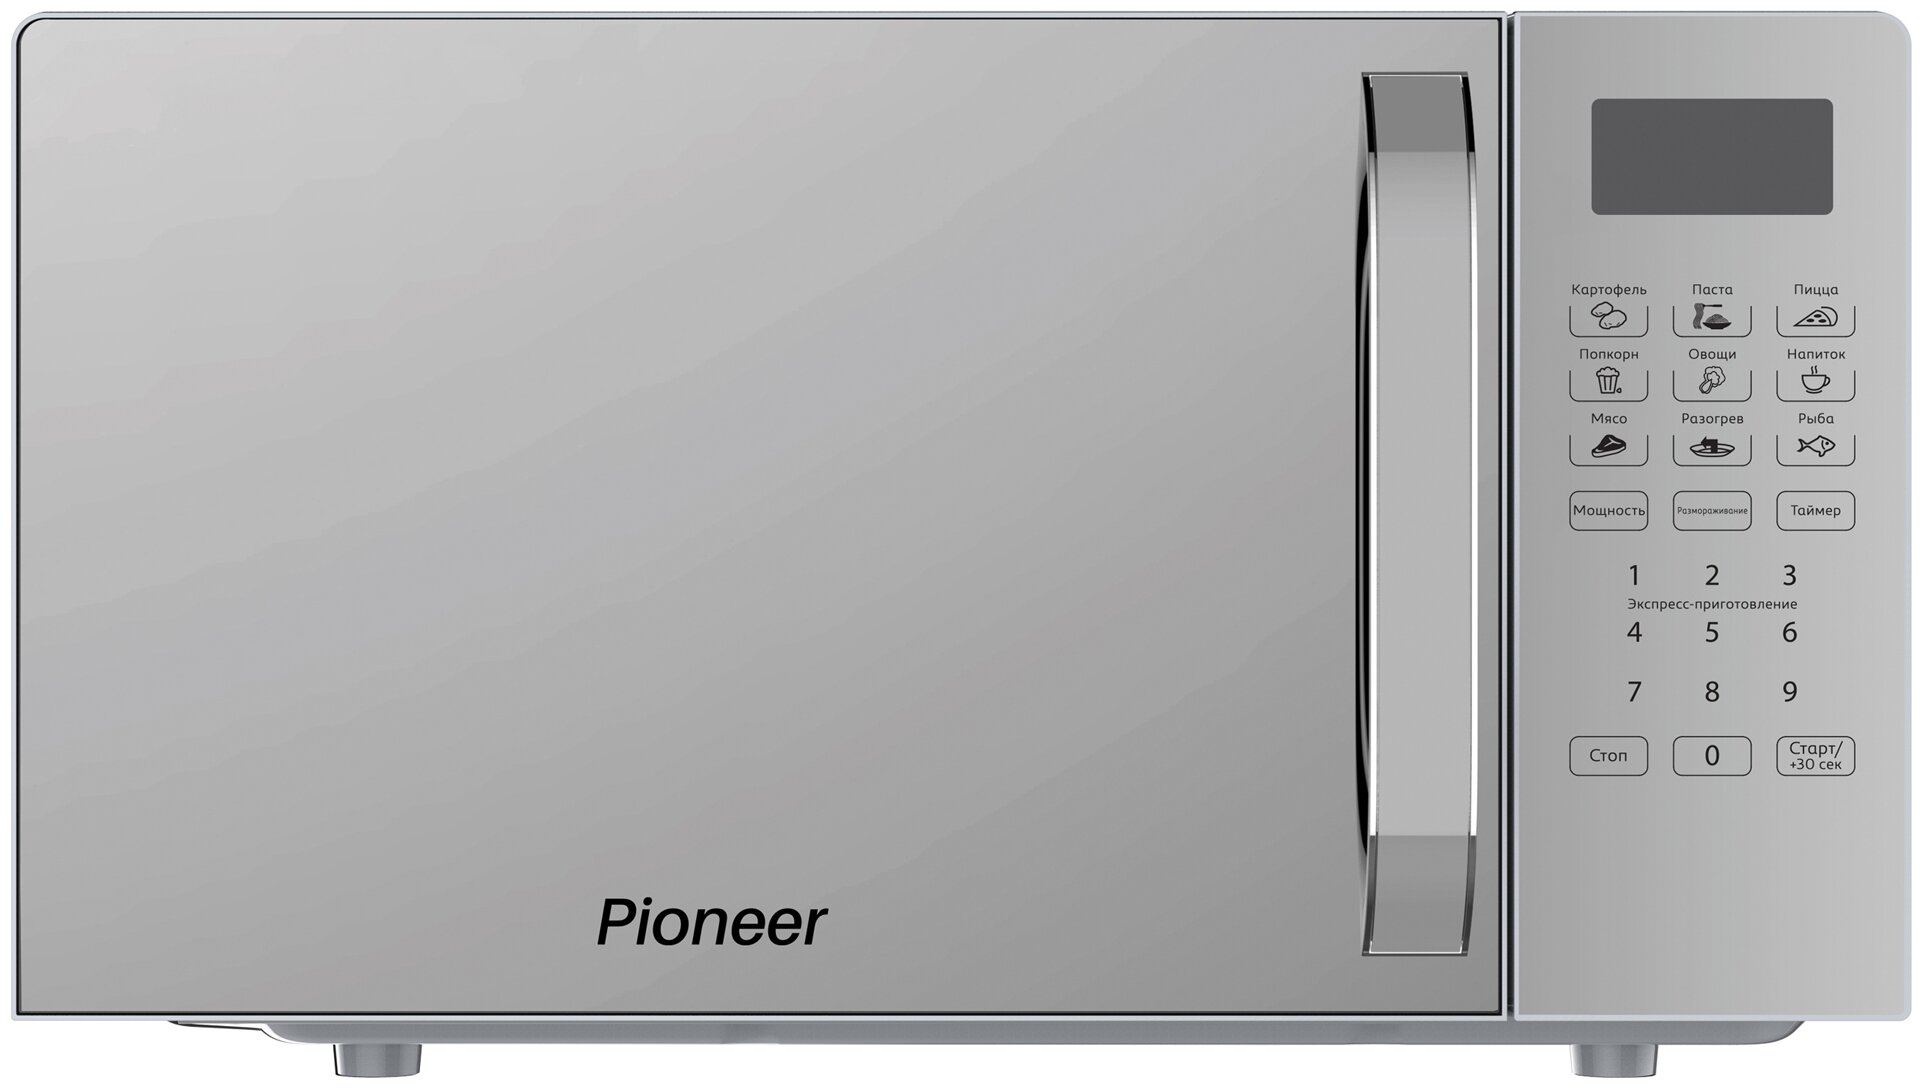 Pioneer - фото №1